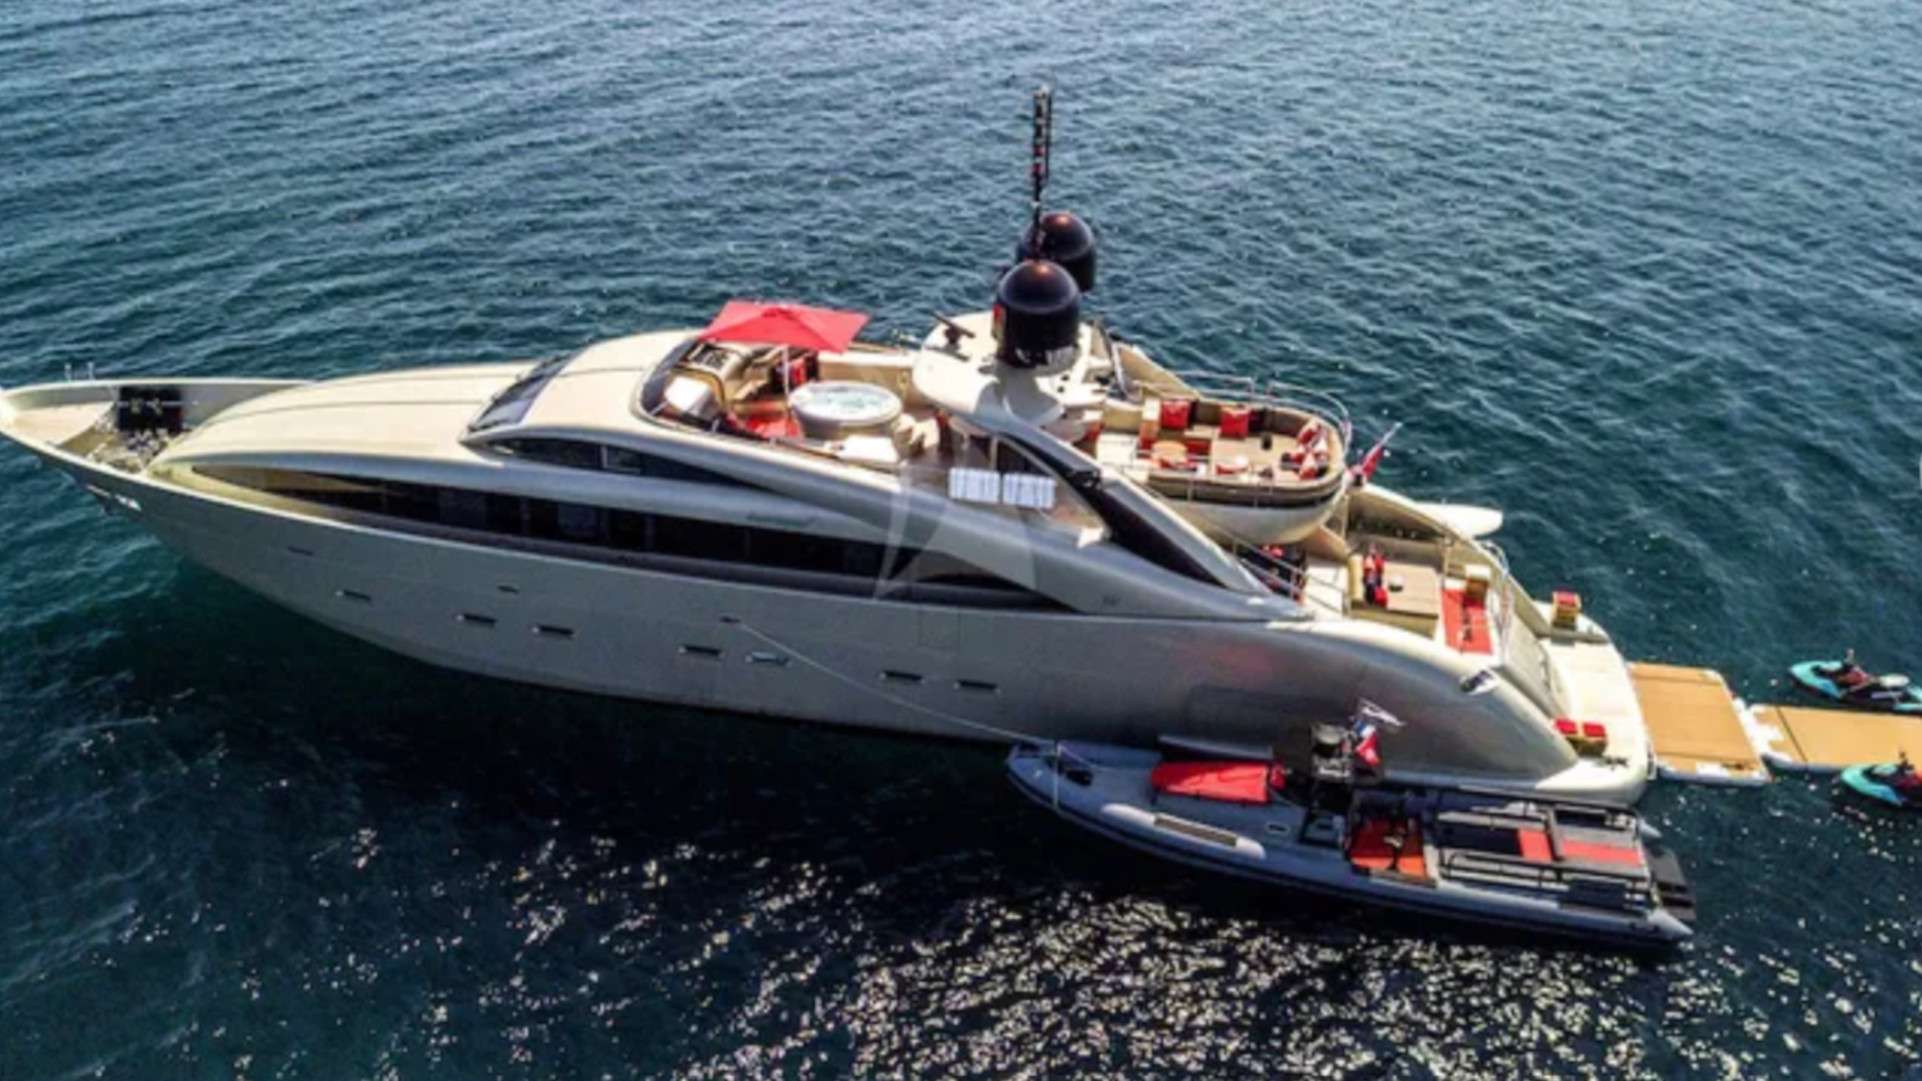 YCM 120 - Yacht Charter Vilajoyosa & Boat hire in Riviera, Corsica, Sardinia, Spain, Balearics, Caribbean 1